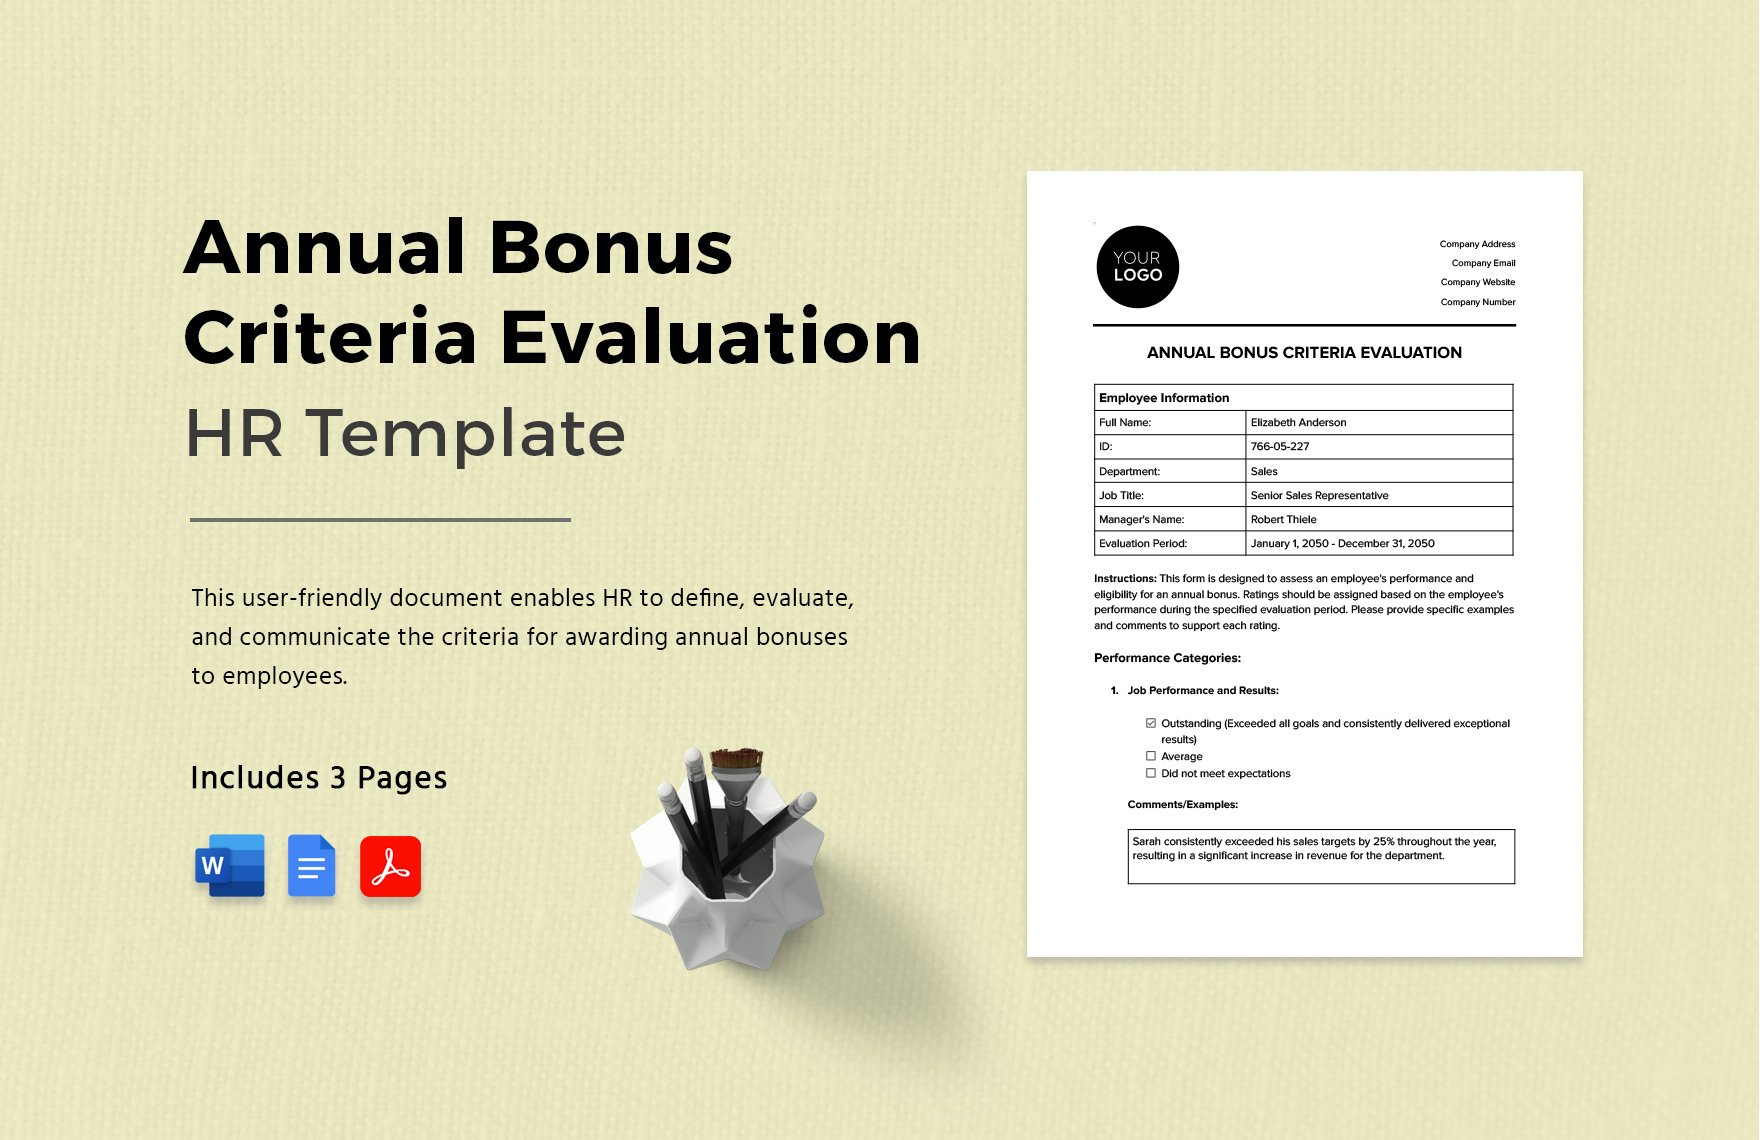 Annual Bonus Criteria Evaluation HR Template